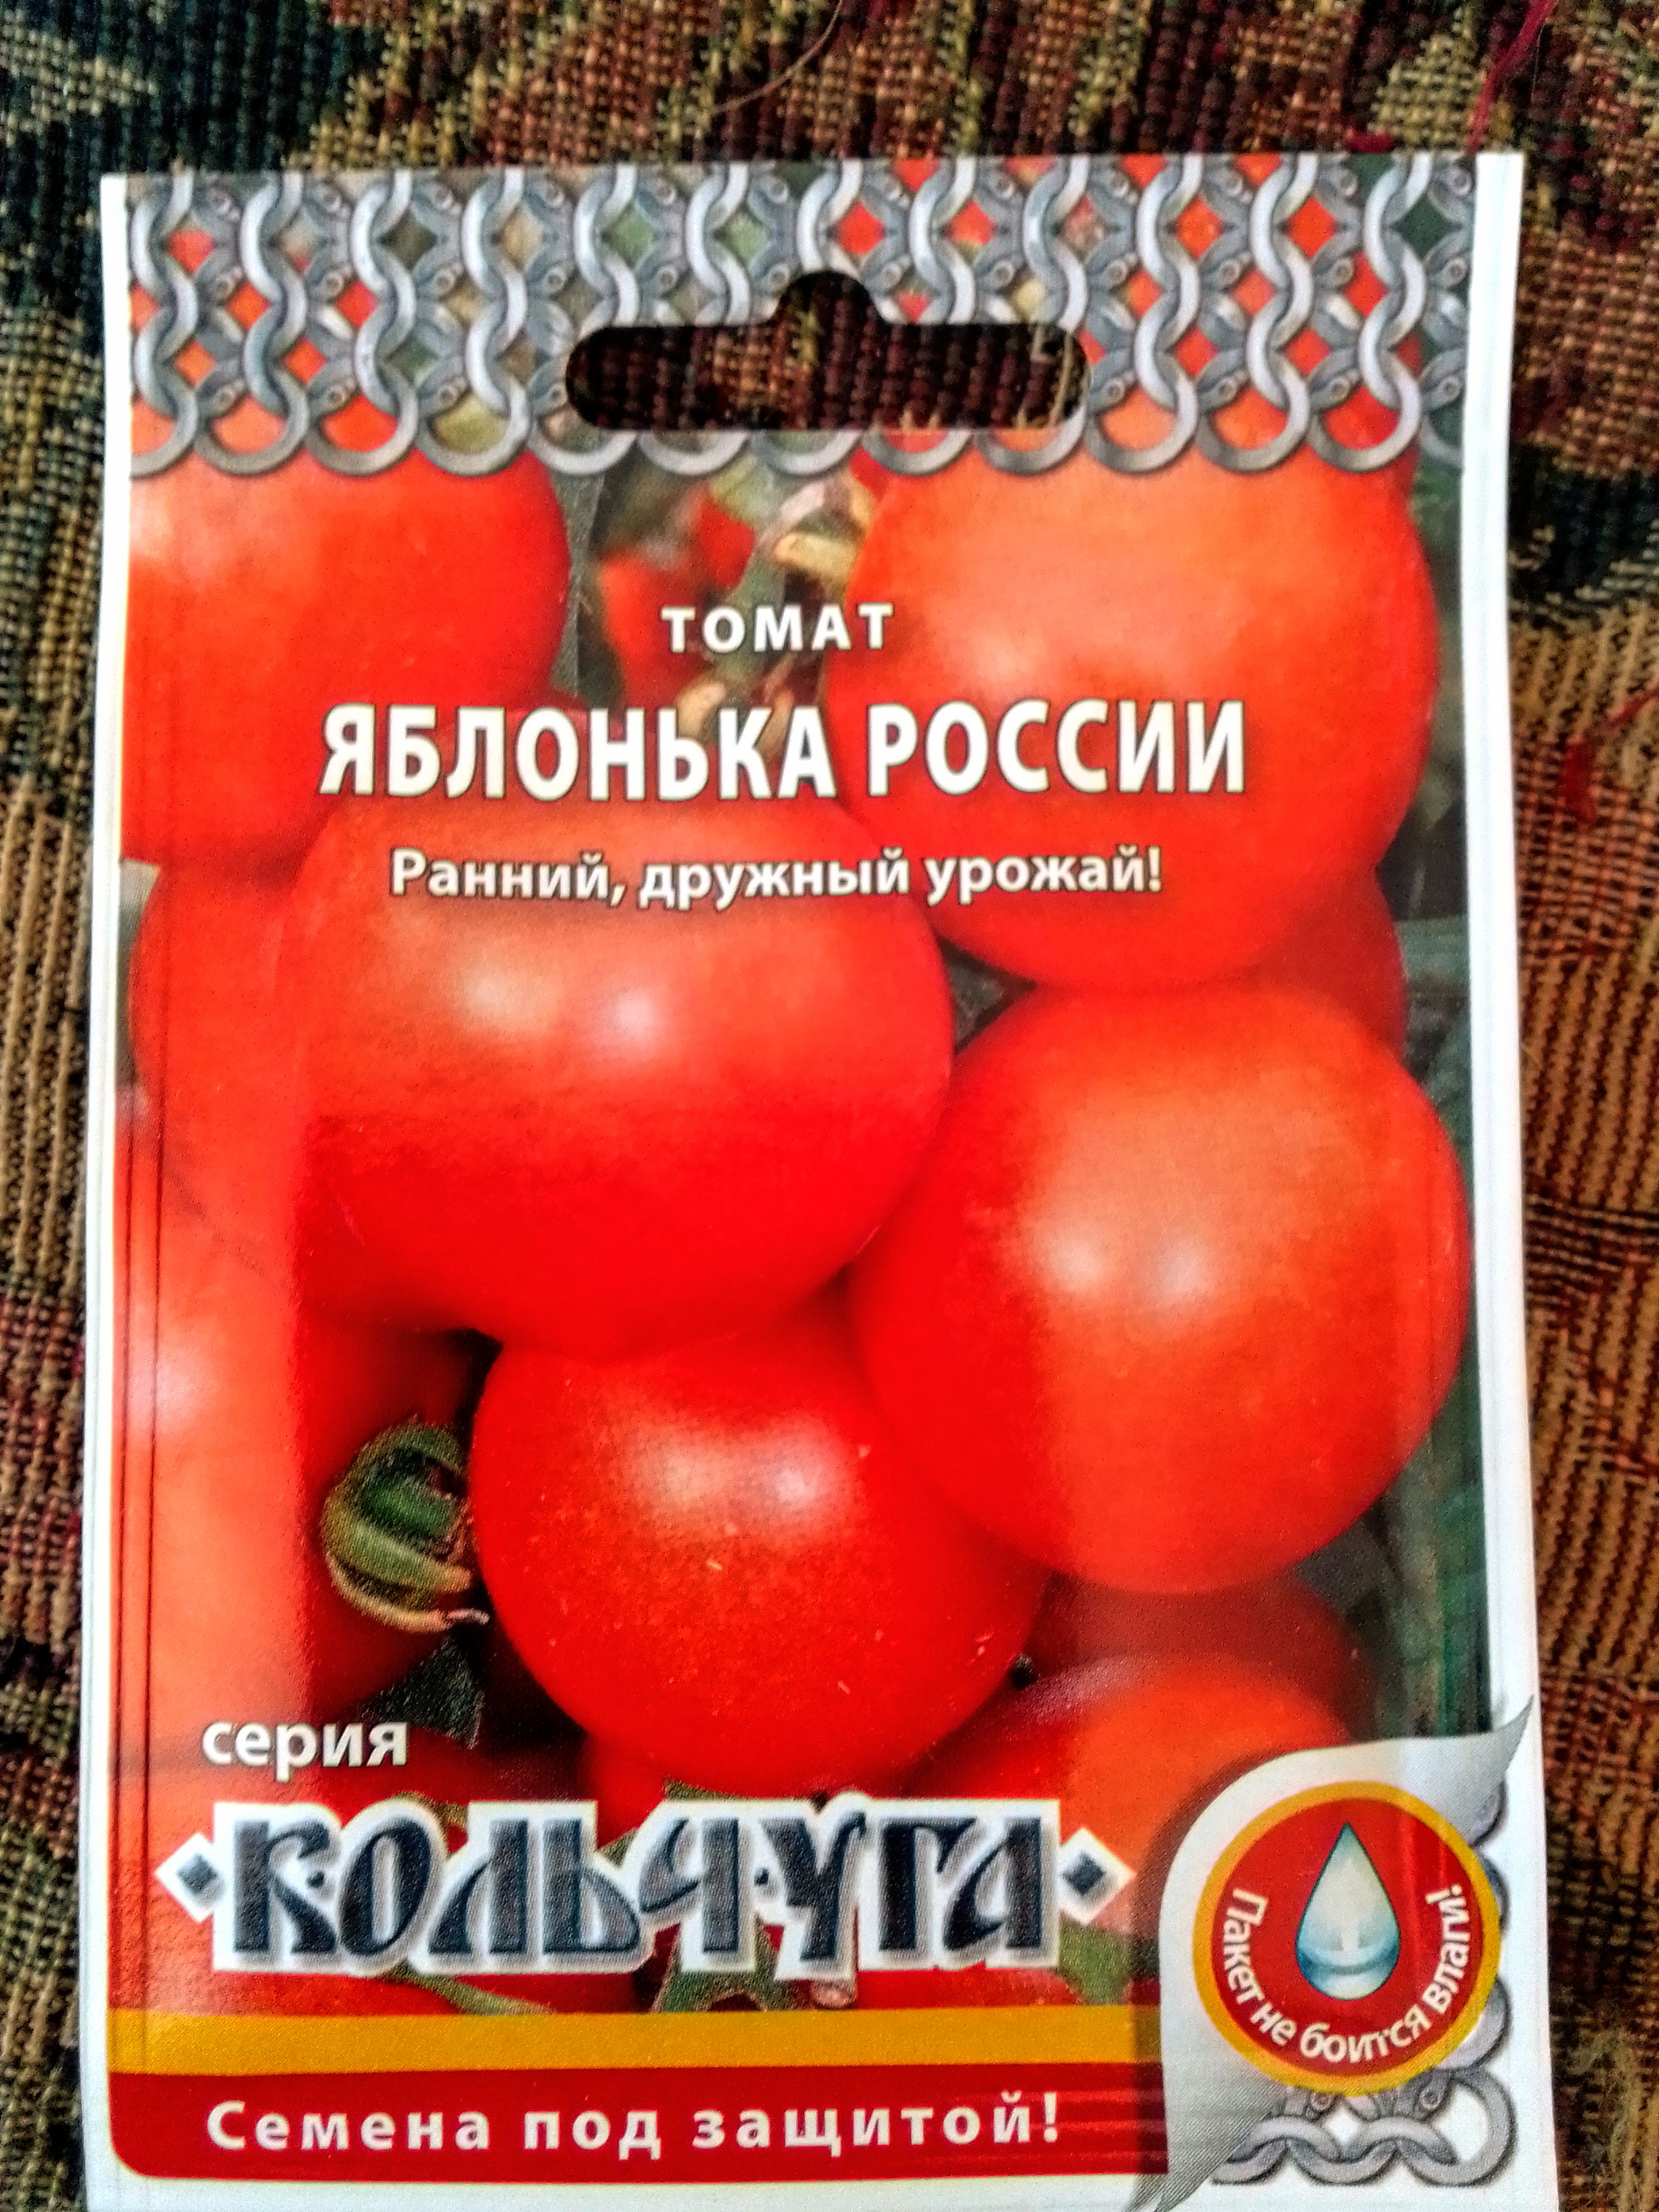 Сорт томата яблонька россии отзывы